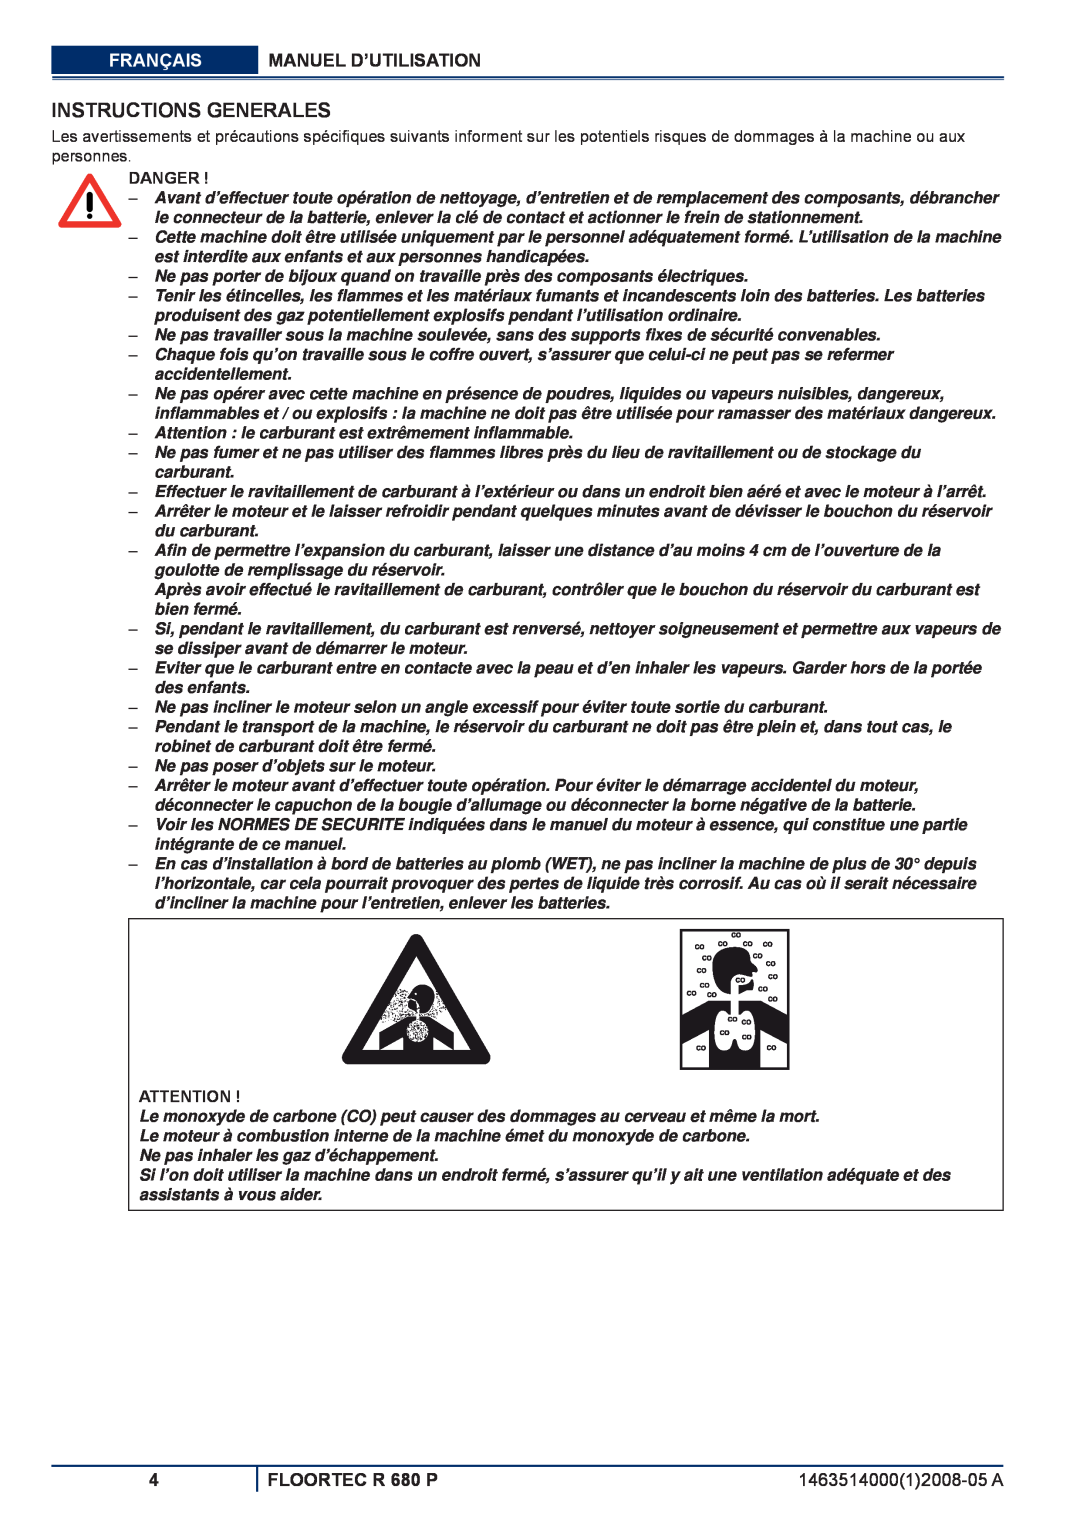 Nilfisk-ALTO manuel dutilisation Instructions Generales, Français, Manuel D’Utilisation, FLOORTEC R 680 P, Danger 